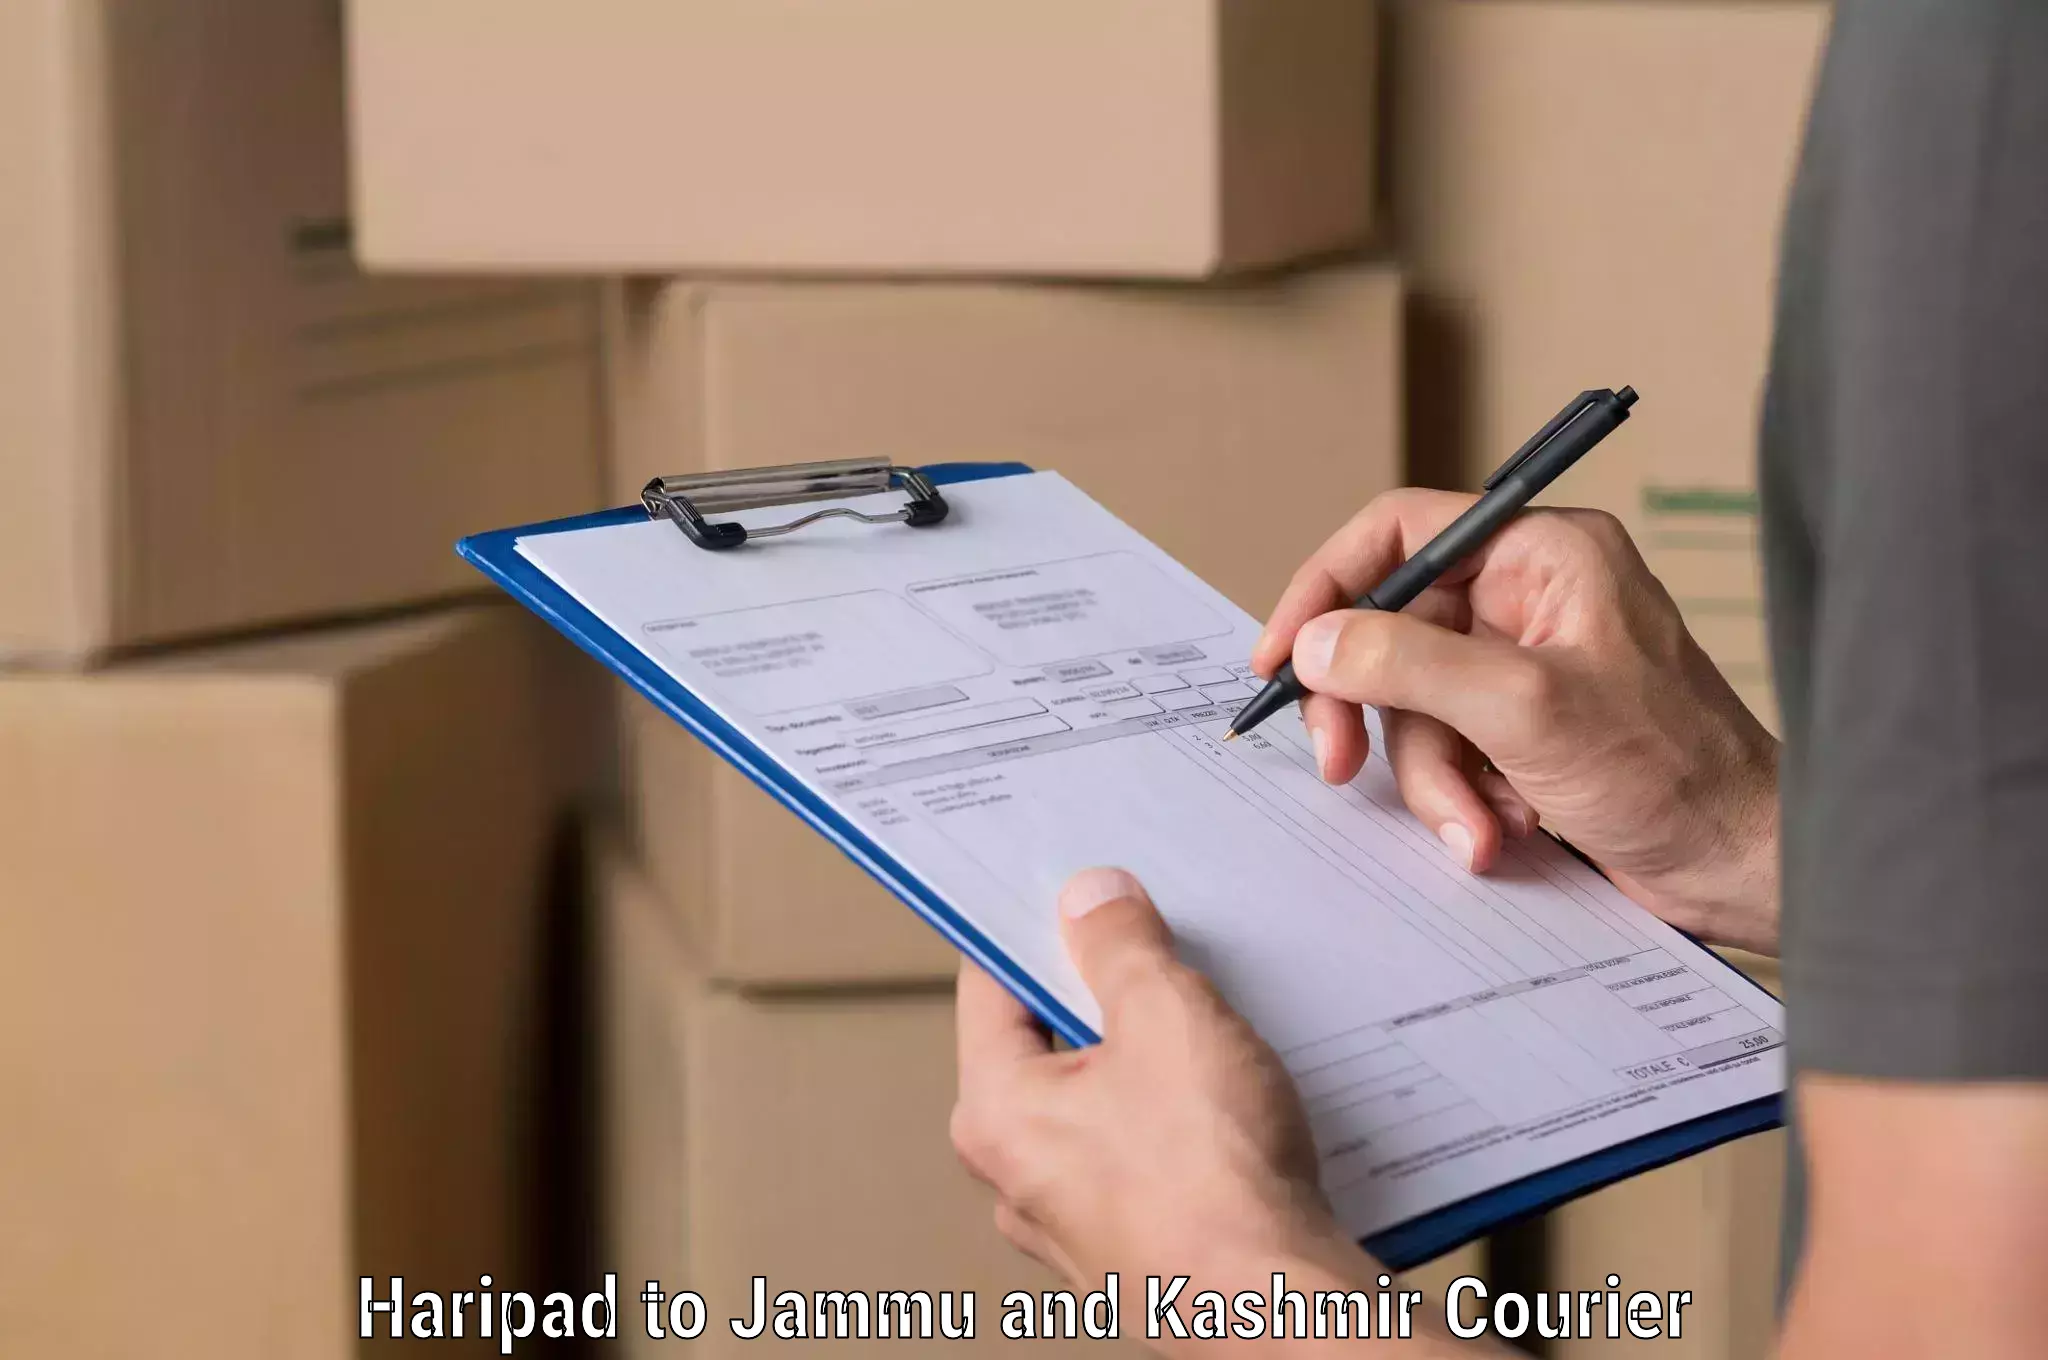 24/7 courier service Haripad to Srinagar Kashmir